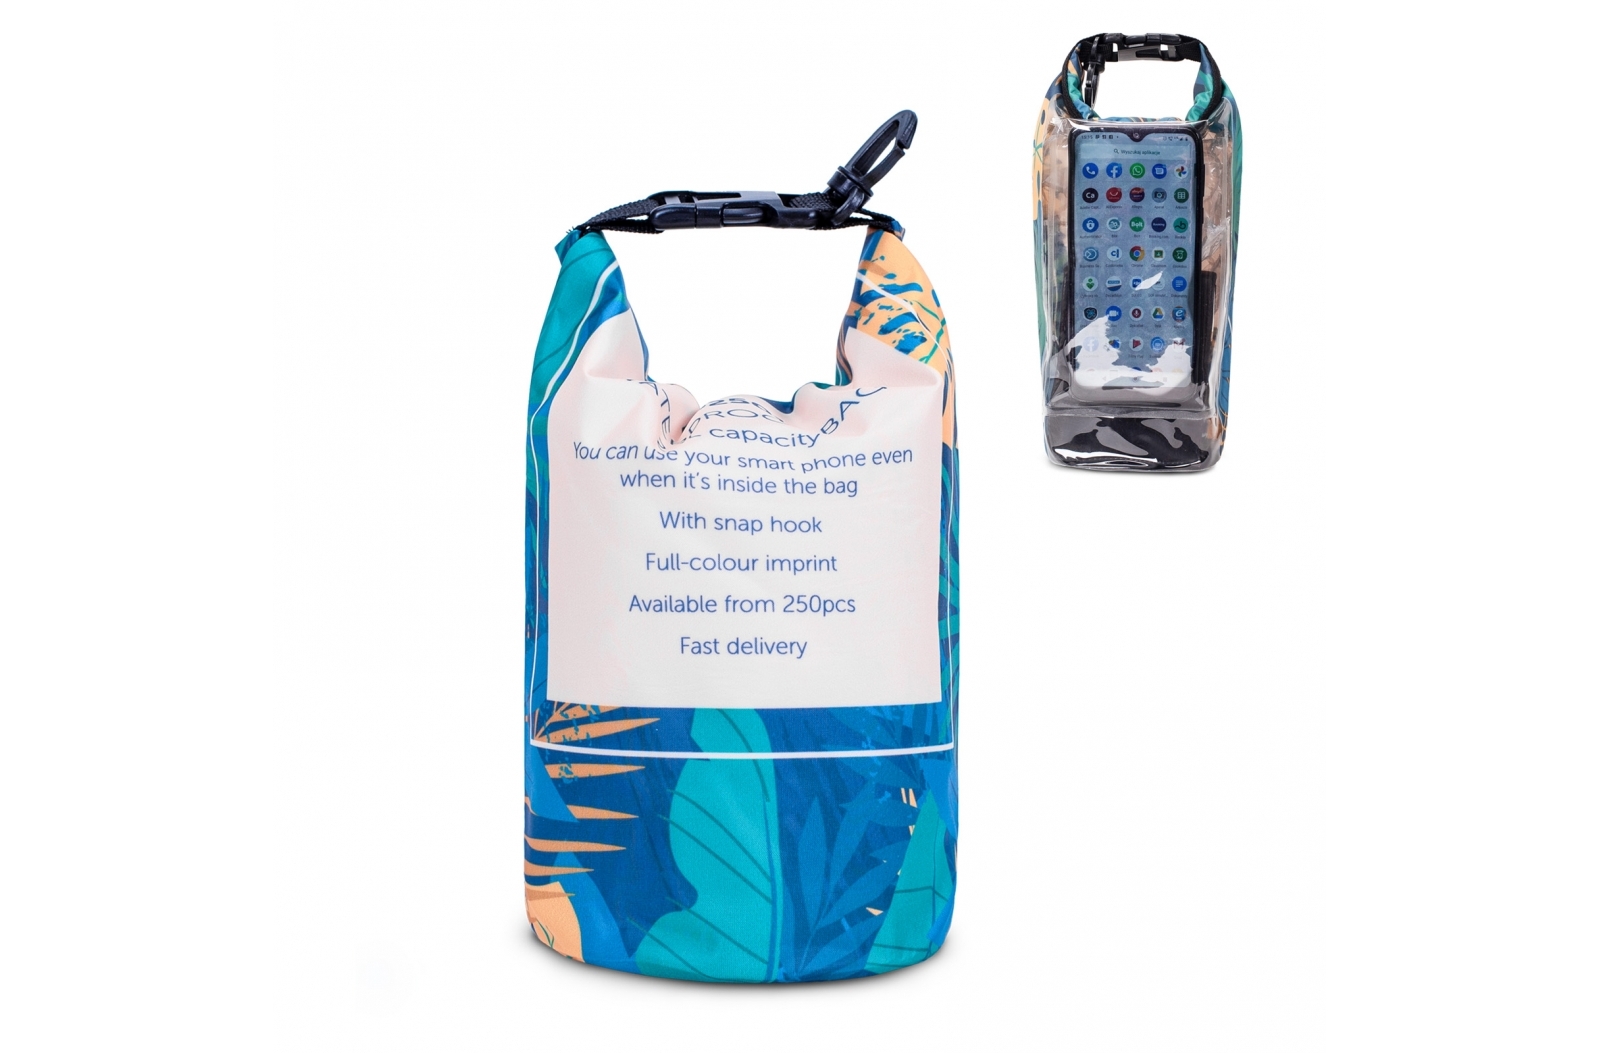 Vandtæt strandpose til smarttelefon - Marie